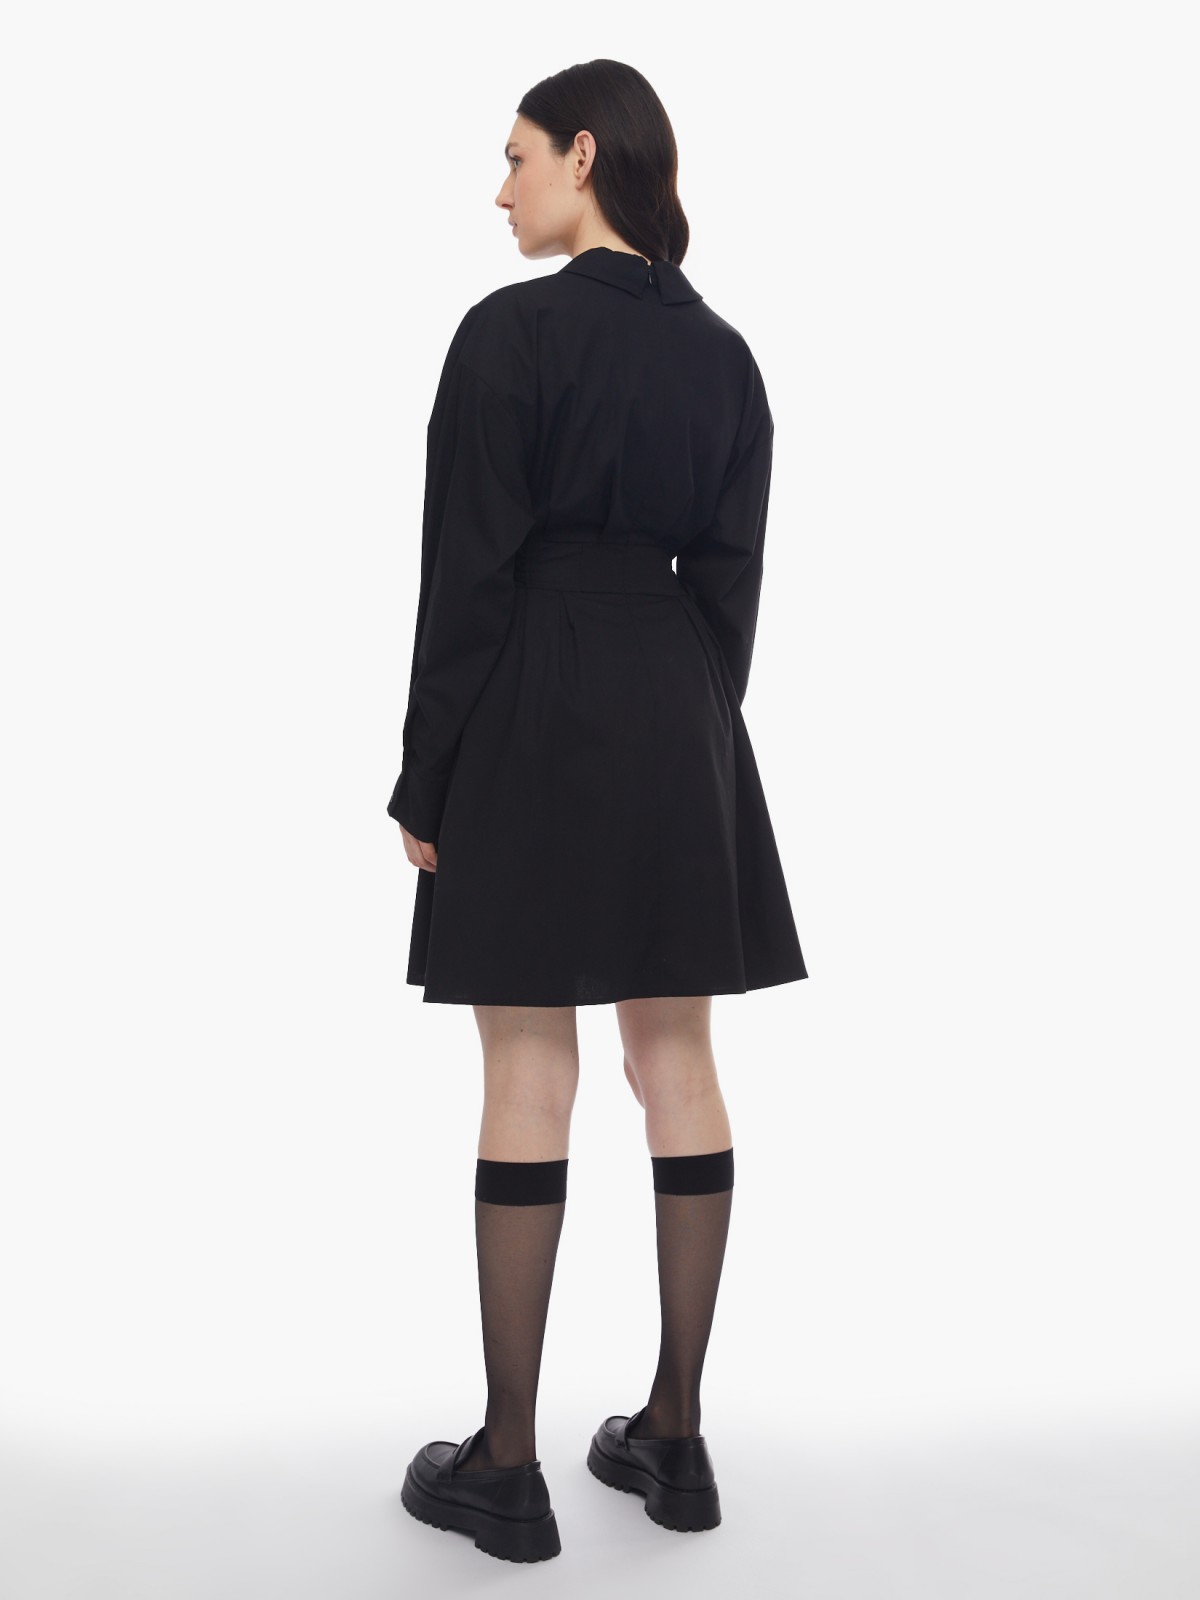 Платье длины мини из хлопка со шнуровкой на талии zolla 024138239291, цвет черный, размер XS - фото 5